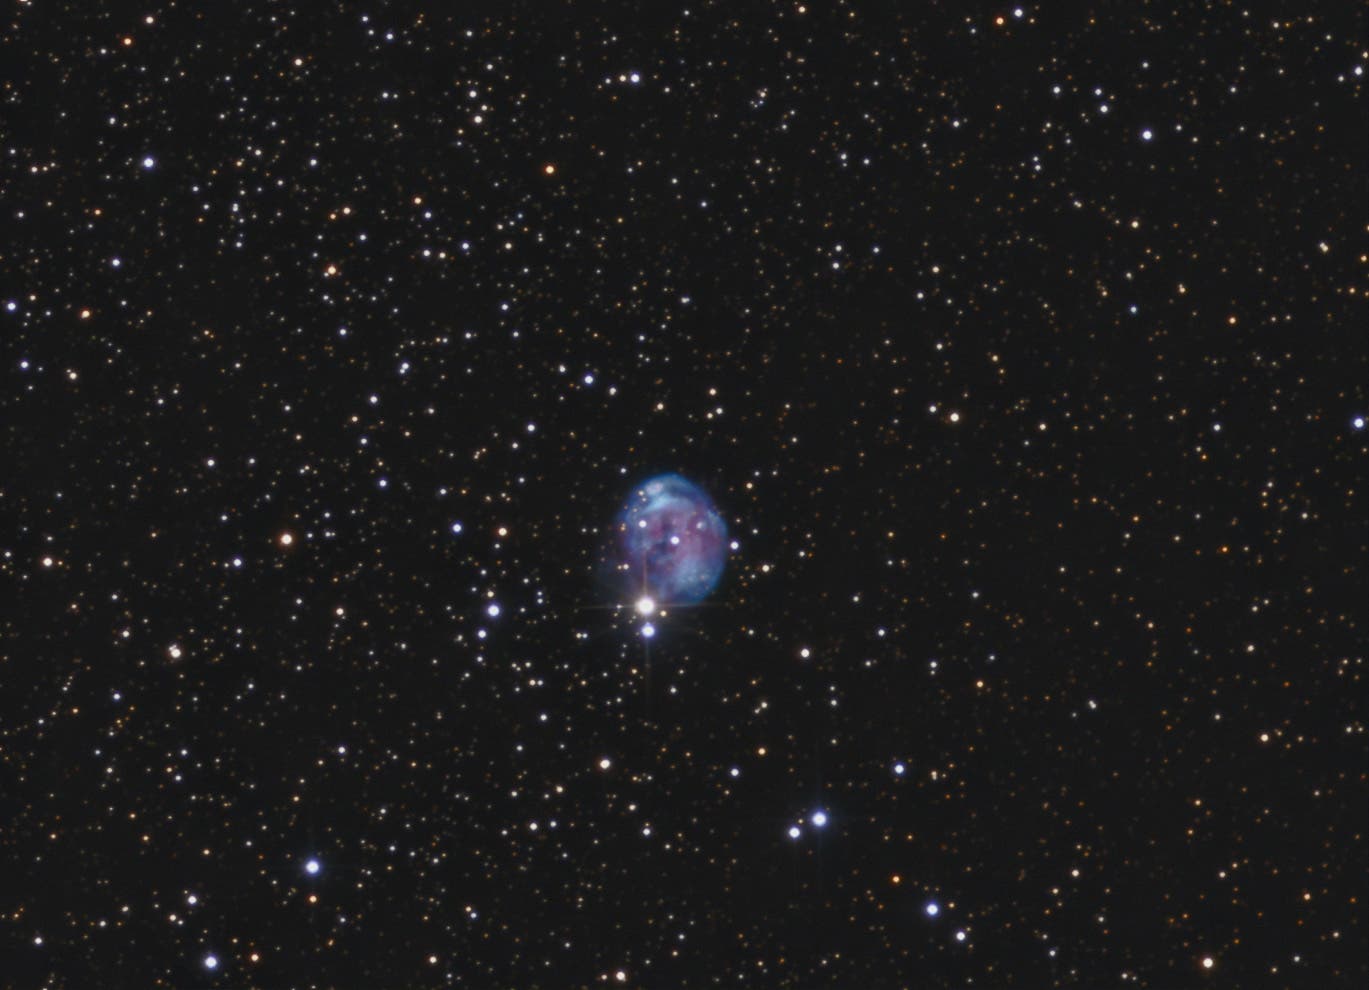 NGC 7008 Fötusnebel